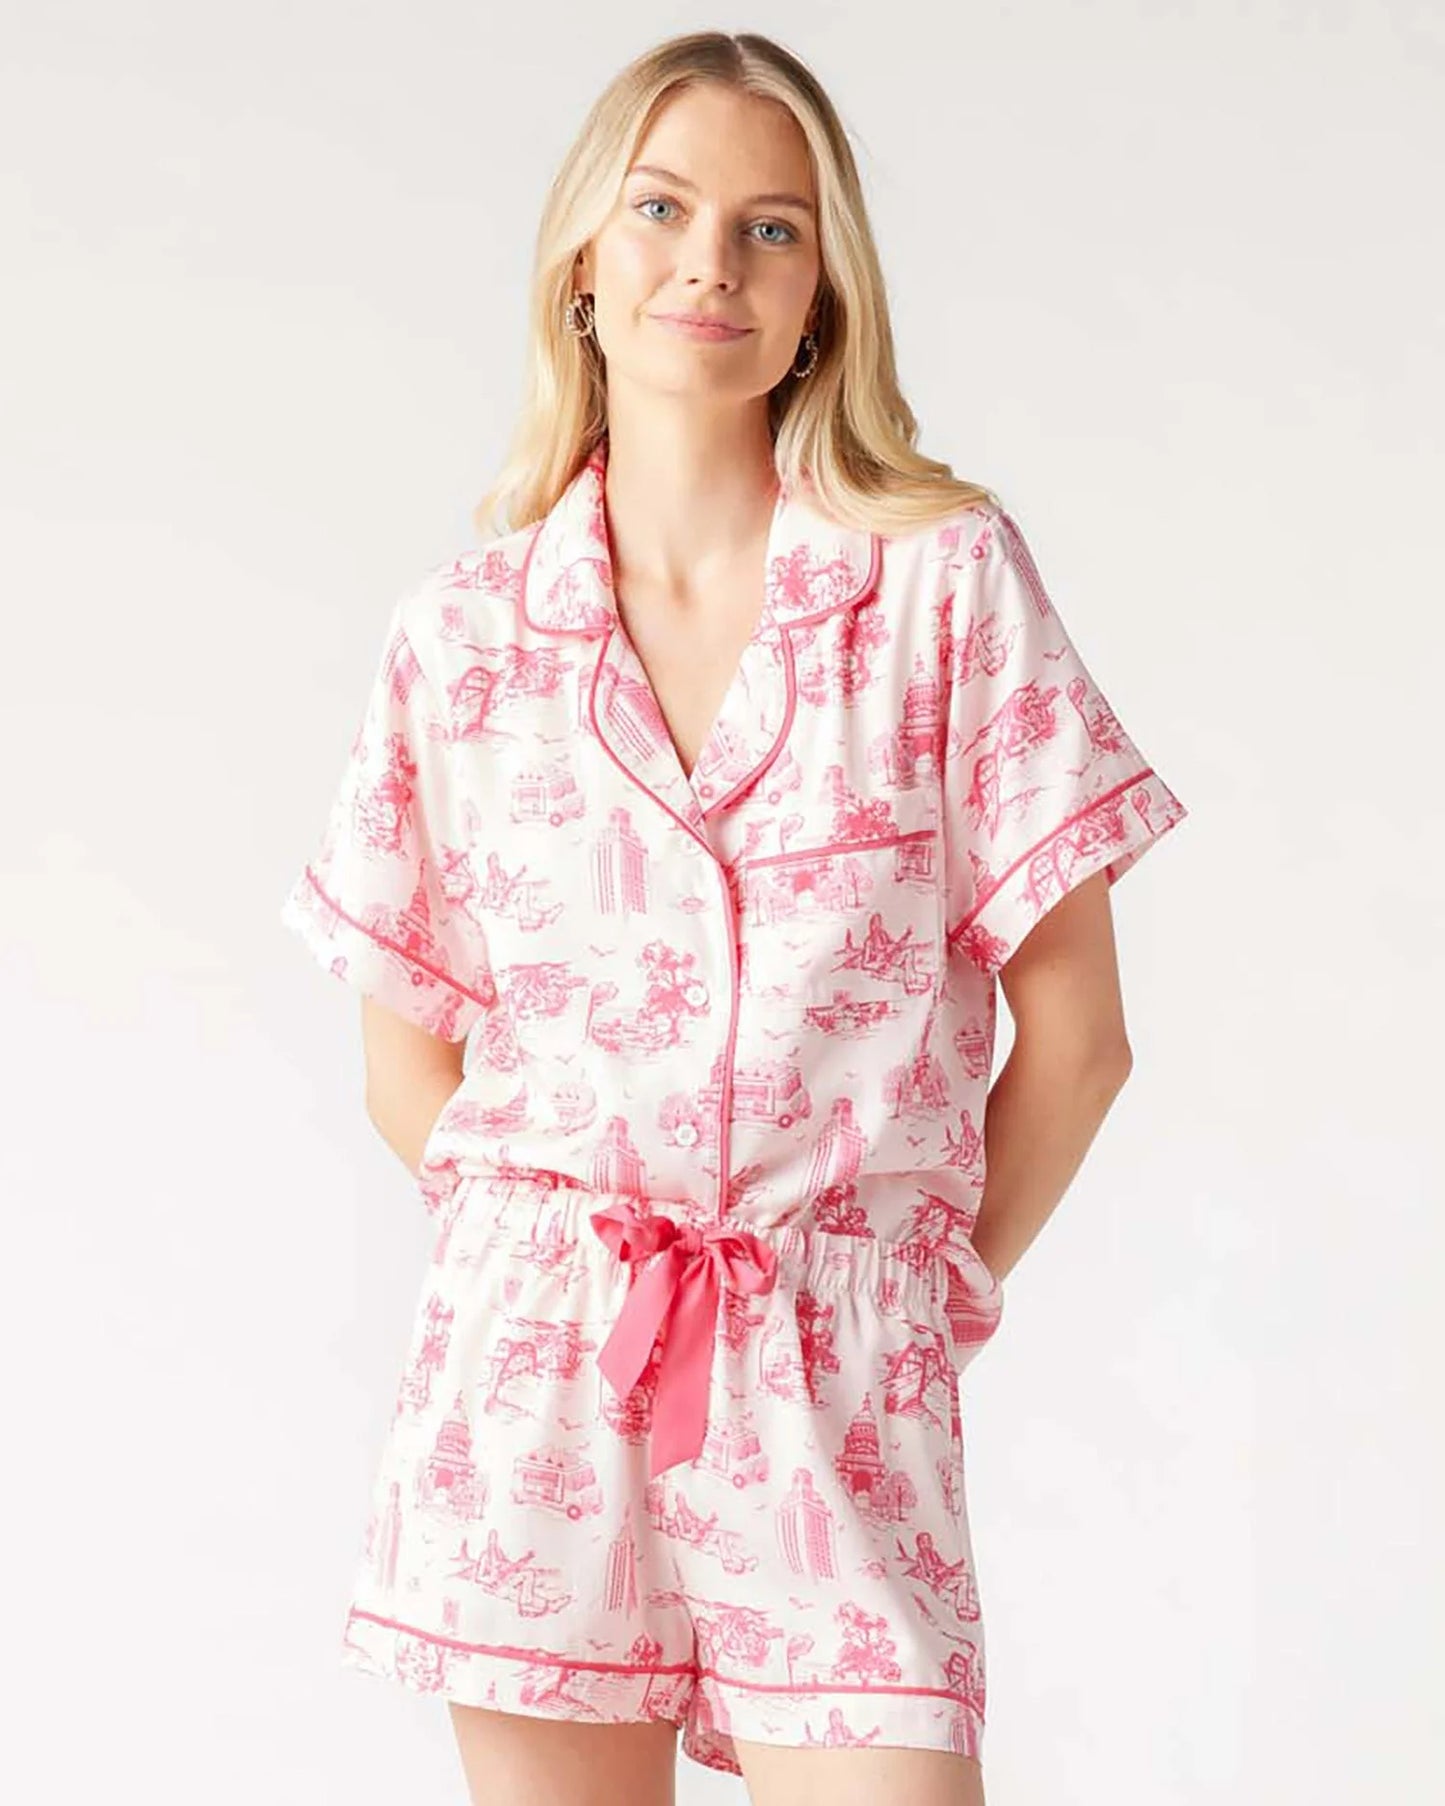 Austin Pajama Short Set